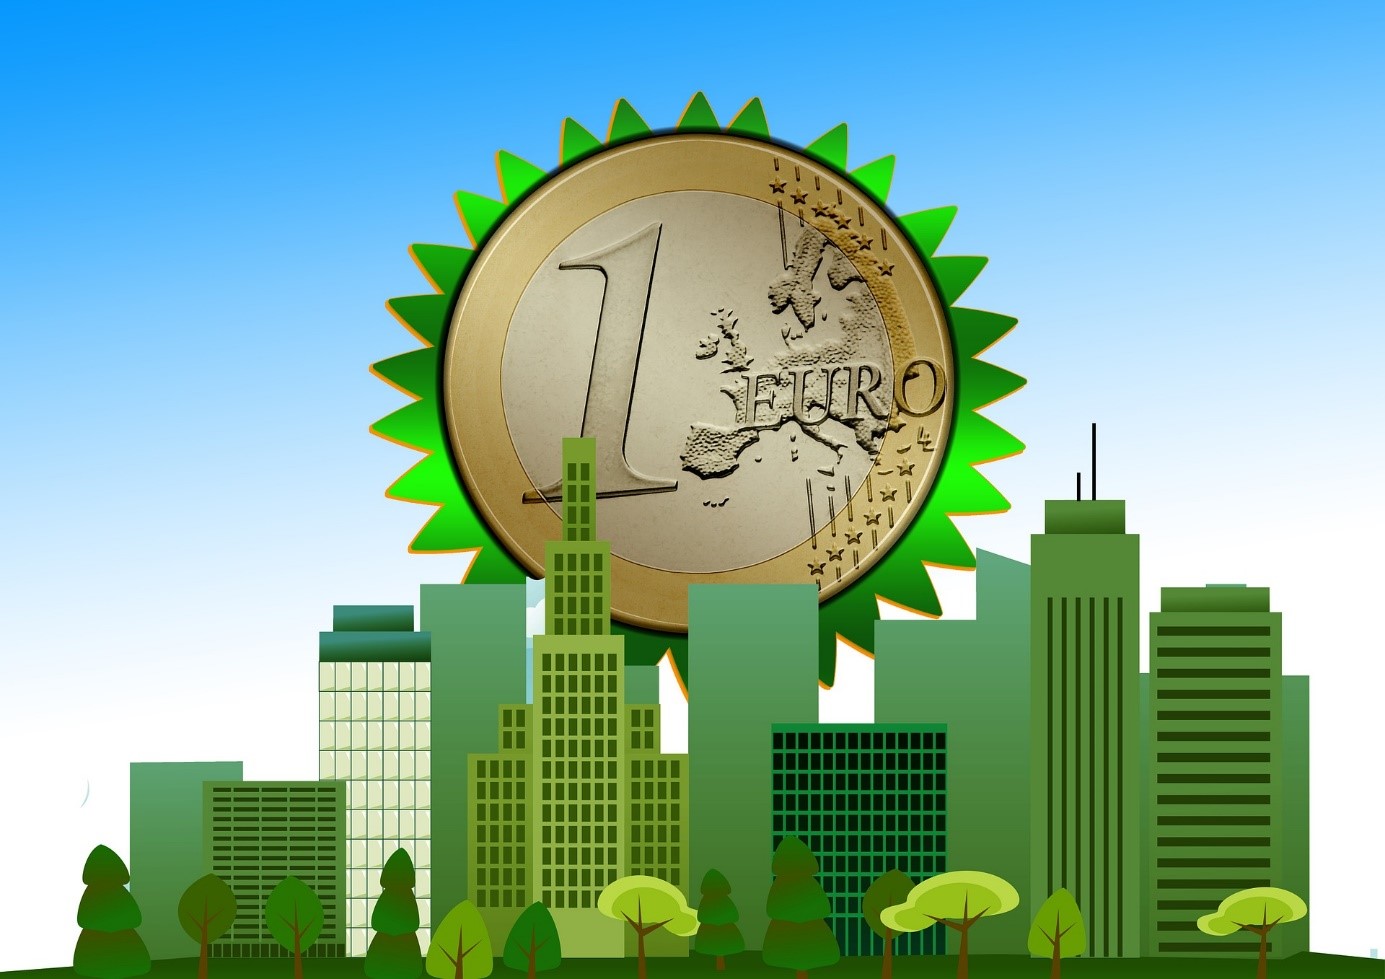 Cartoonbild: Euromünze über Hochhaus- bzw. Banken-Silhouette